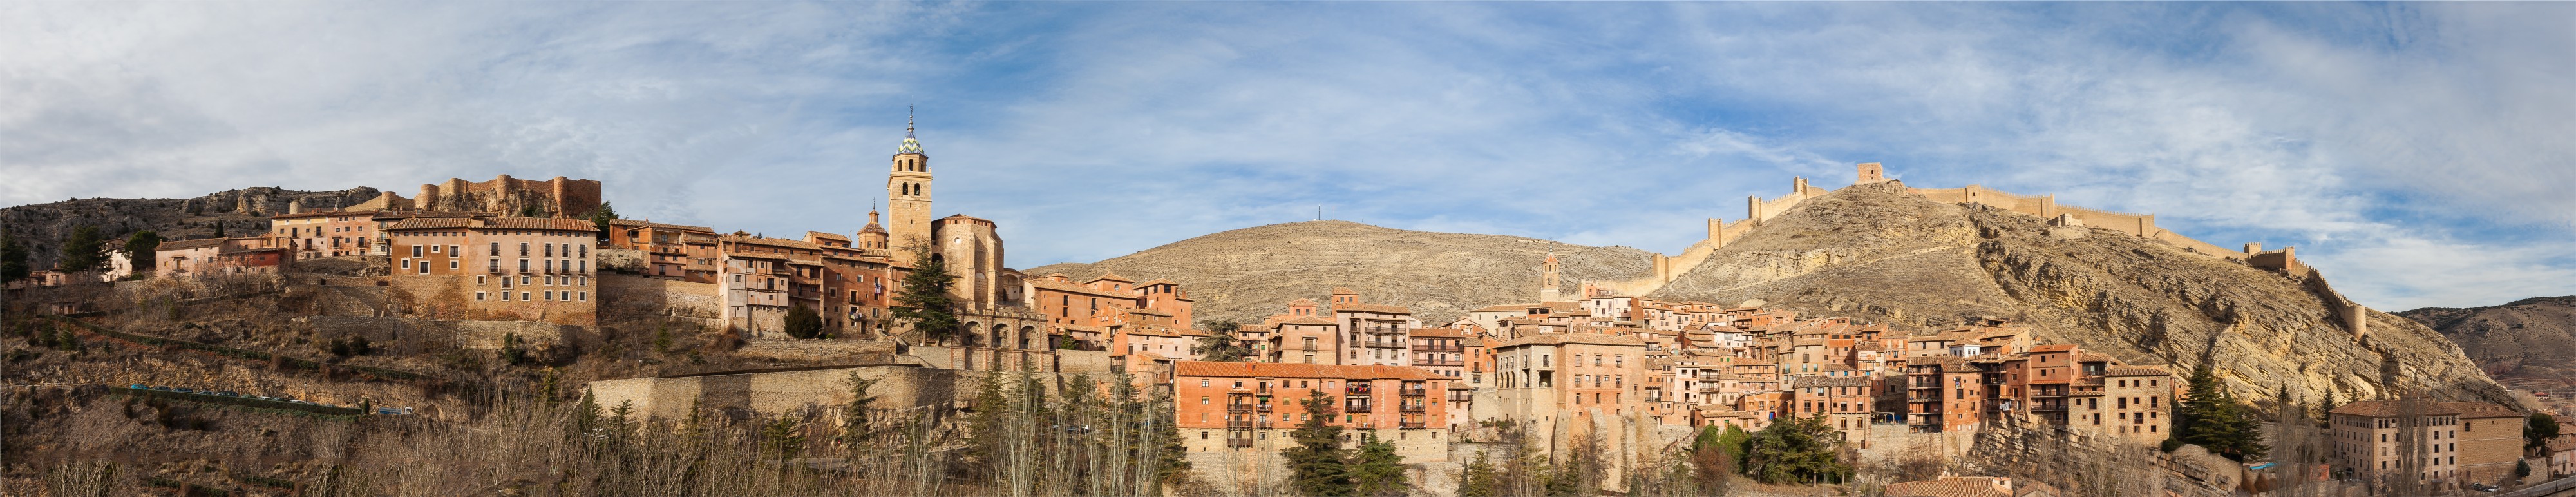 Albarracín, Teruel, España, 2014-01-10, DD 022-025 PAN